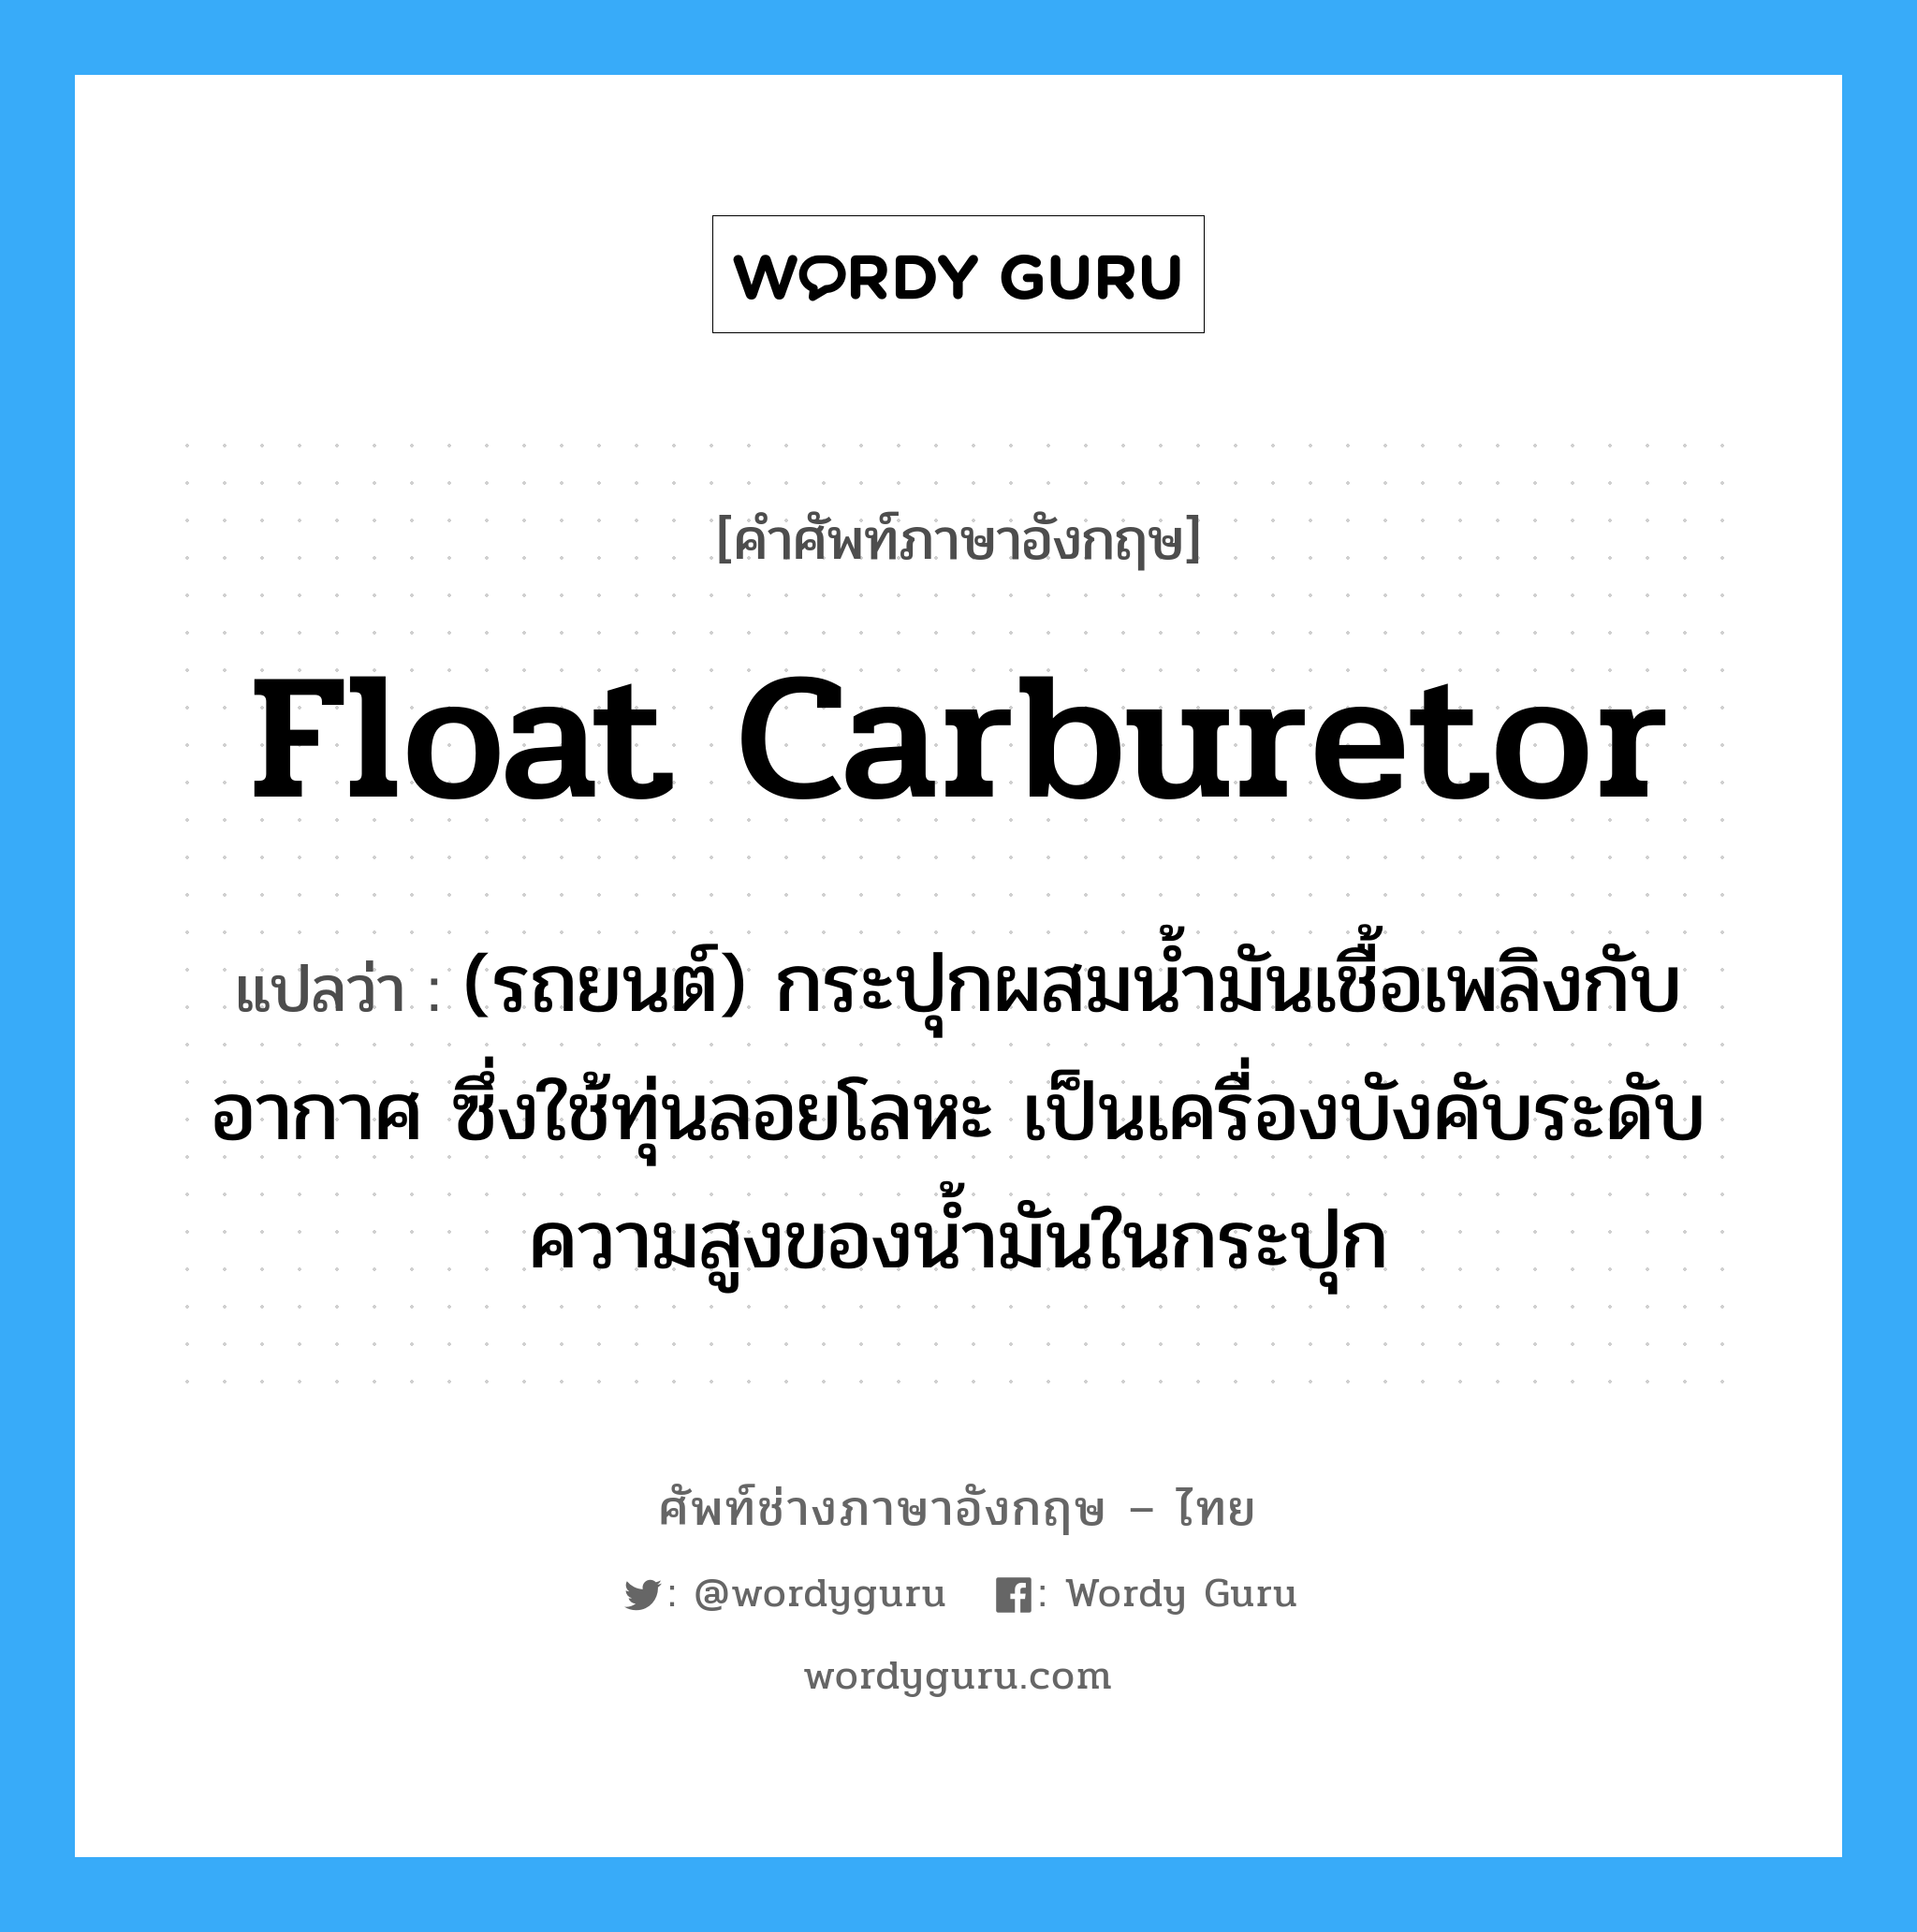 float carburetor แปลว่า?, คำศัพท์ช่างภาษาอังกฤษ - ไทย float carburetor คำศัพท์ภาษาอังกฤษ float carburetor แปลว่า (รถยนต์) กระปุกผสมน้ำมันเชื้อเพลิงกับอากาศ ซึ่งใช้ทุ่นลอยโลหะ เป็นเครื่องบังคับระดับความสูงของน้ำมันในกระปุก